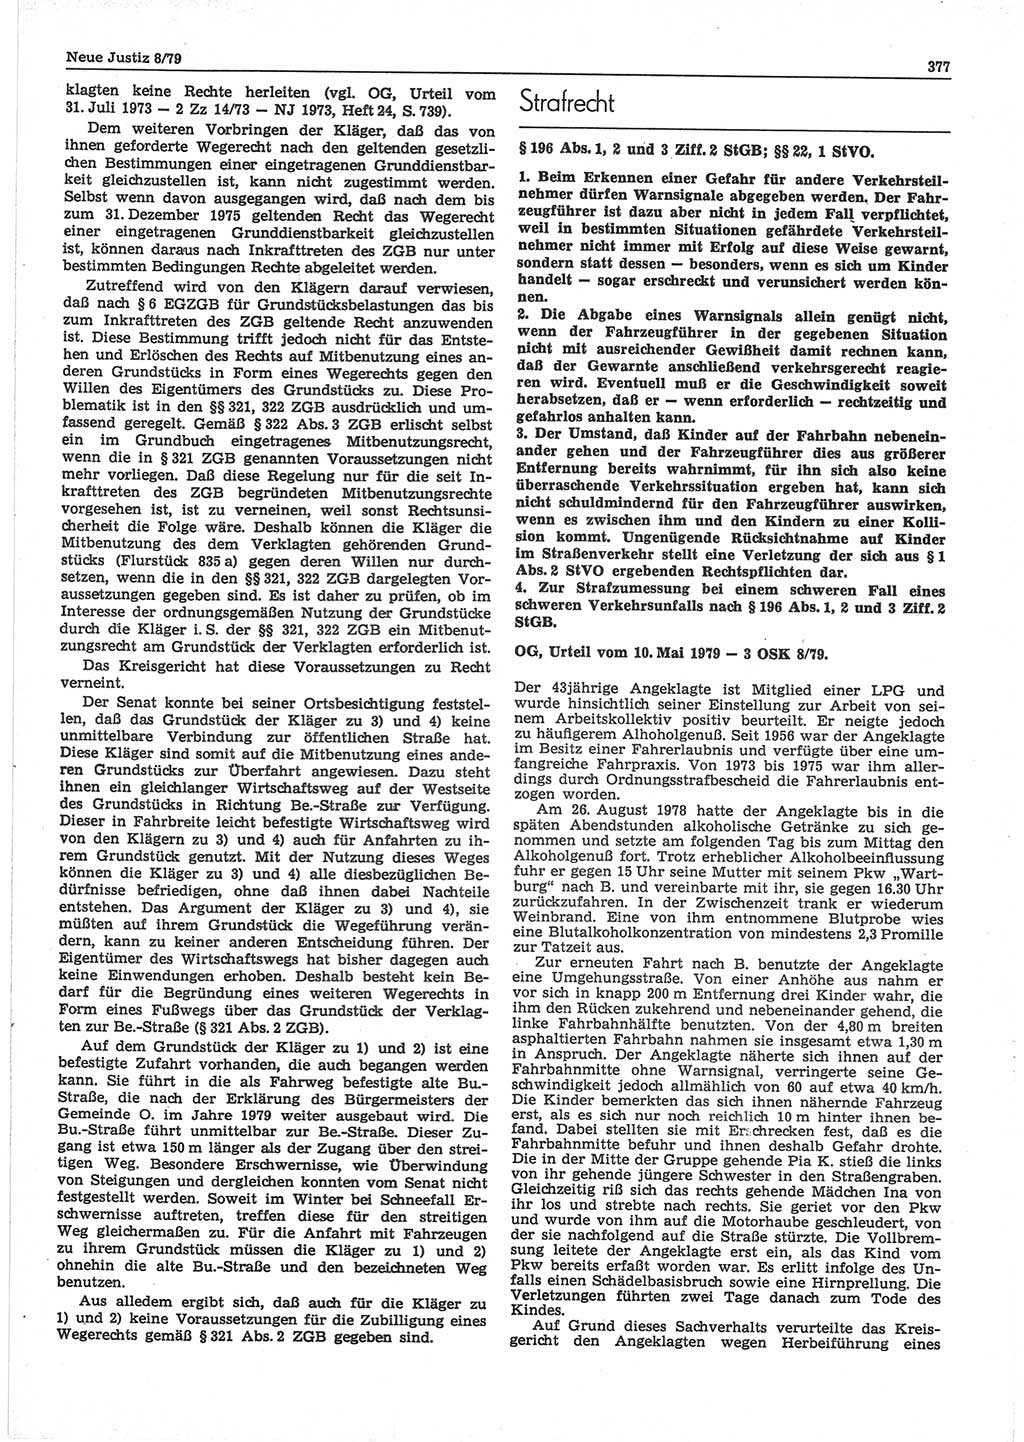 Neue Justiz (NJ), Zeitschrift für sozialistisches Recht und Gesetzlichkeit [Deutsche Demokratische Republik (DDR)], 33. Jahrgang 1979, Seite 377 (NJ DDR 1979, S. 377)